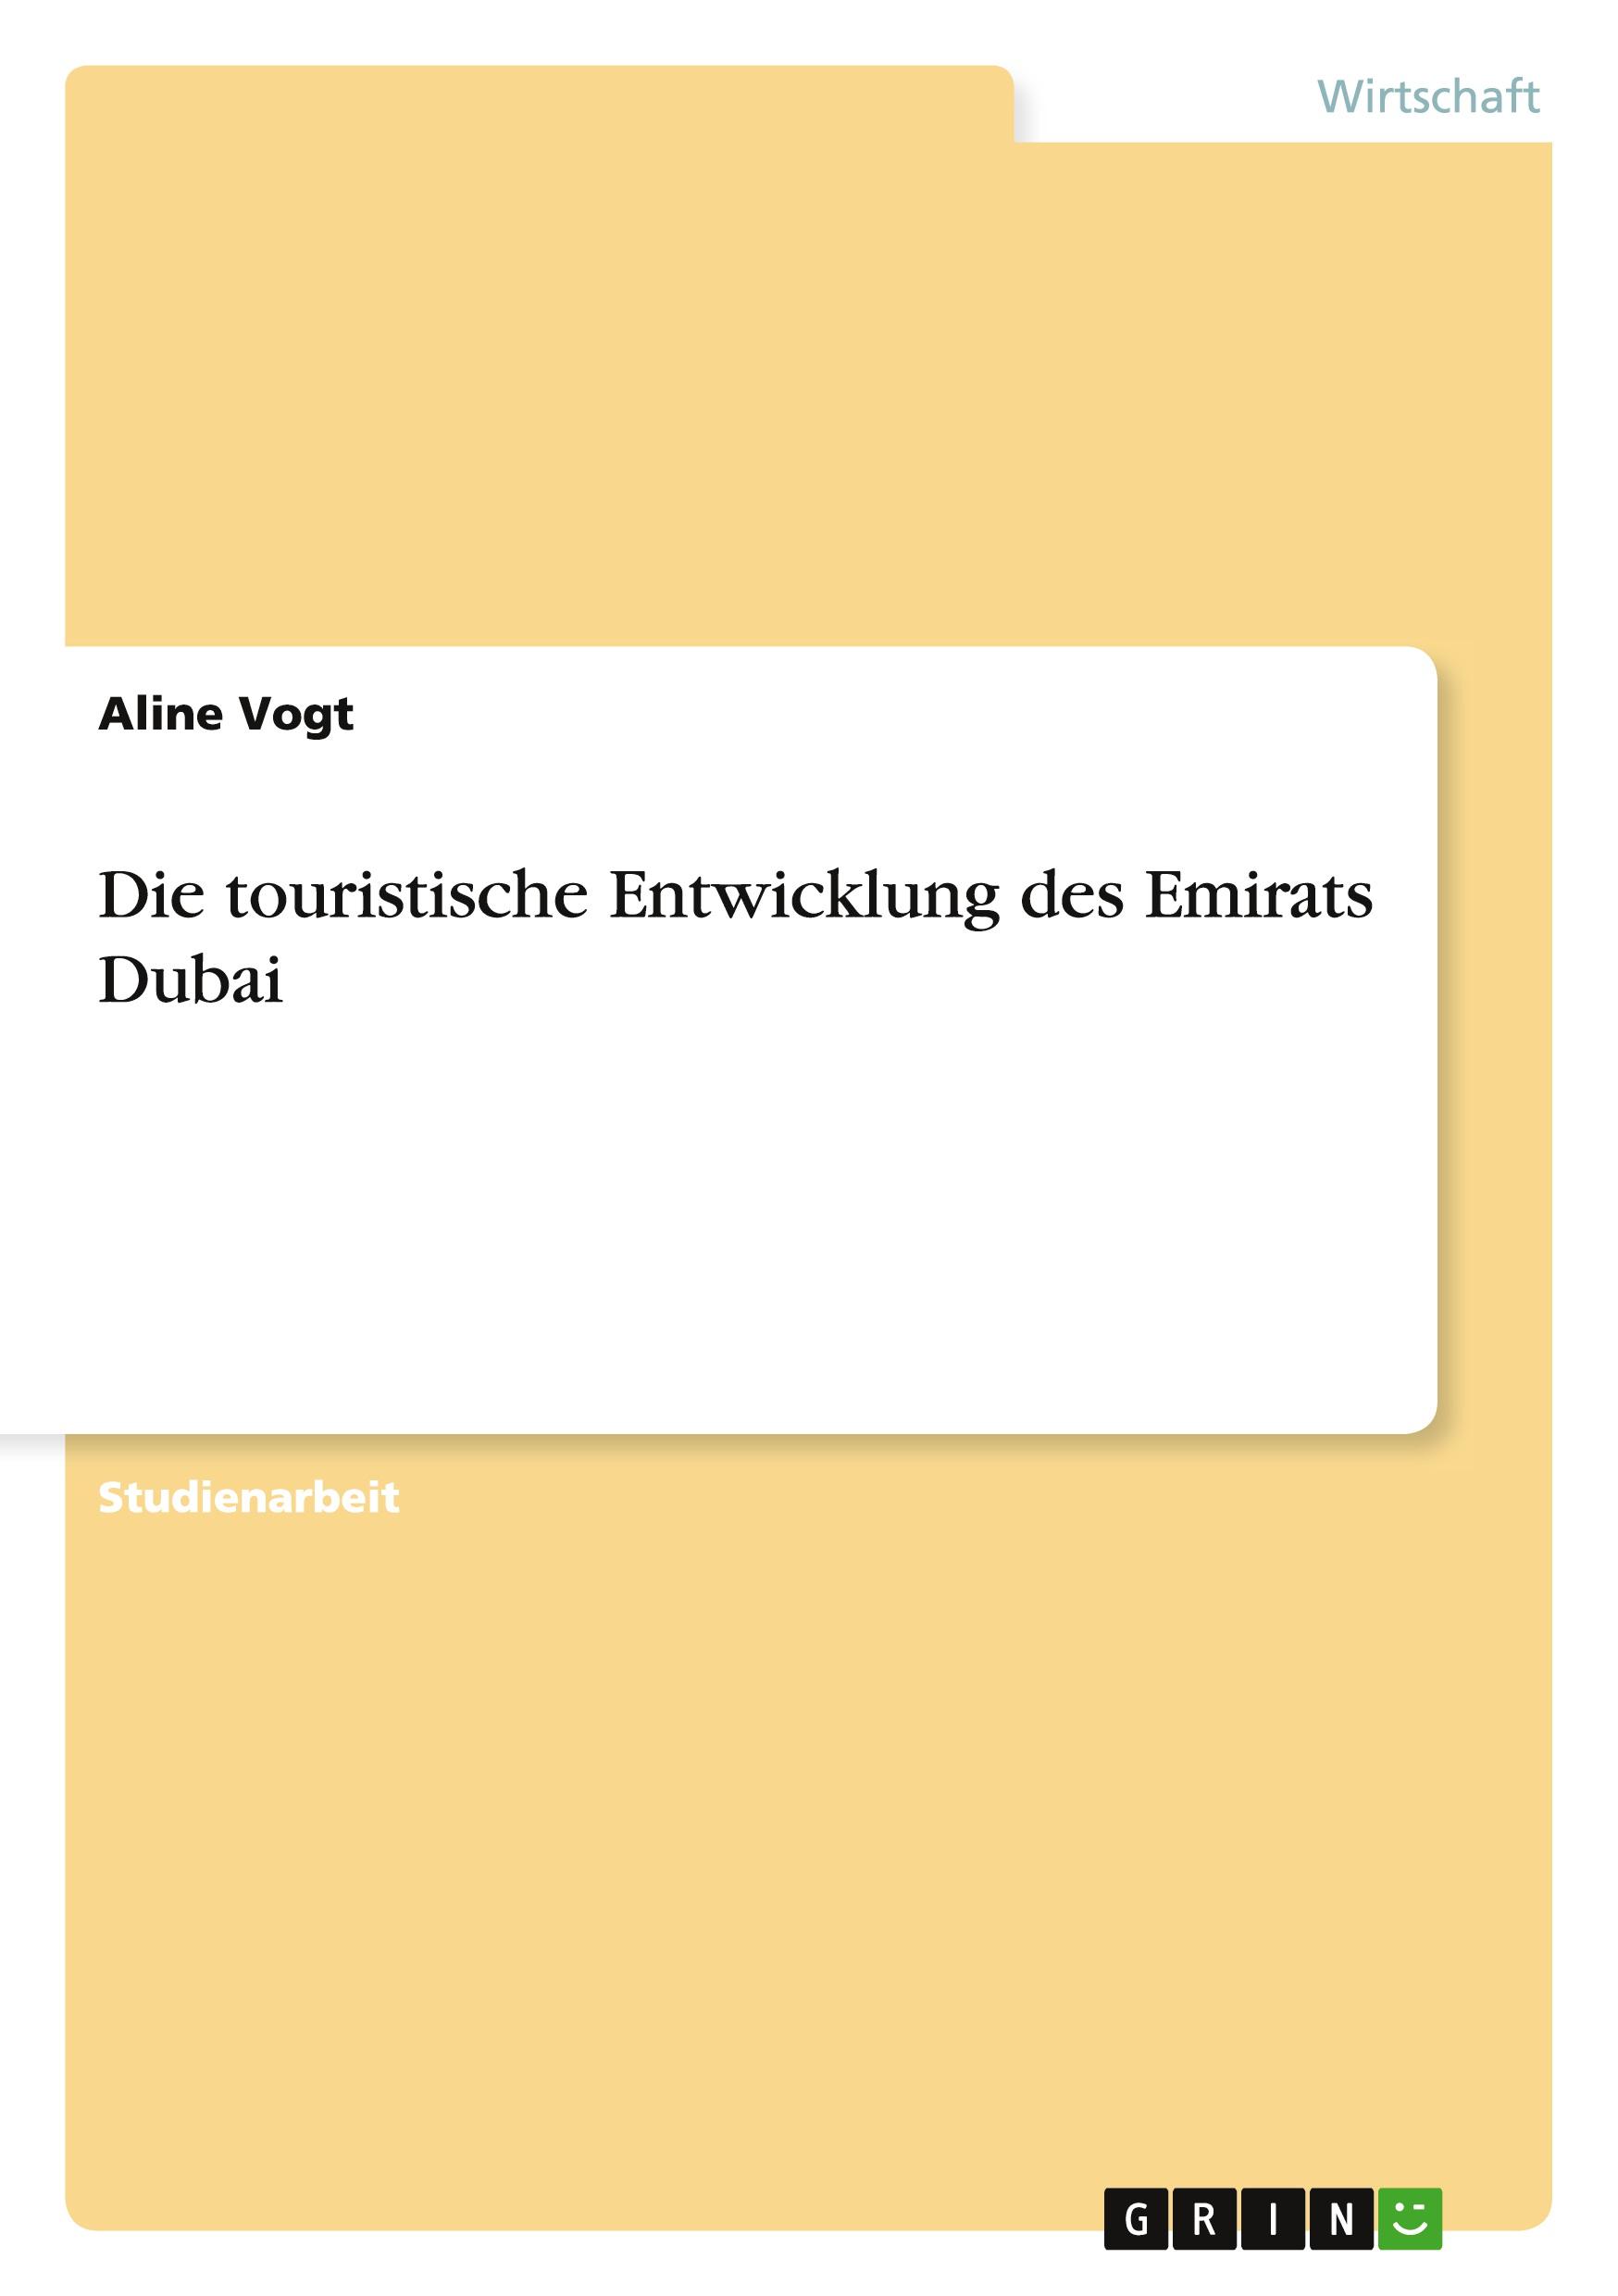 Die touristische Entwicklung des Emirats Dubai / Aline Vogt / Taschenbuch / Paperback / Deutsch / 2011 / GRIN Verlag / EAN 9783640936786 - Vogt, Aline